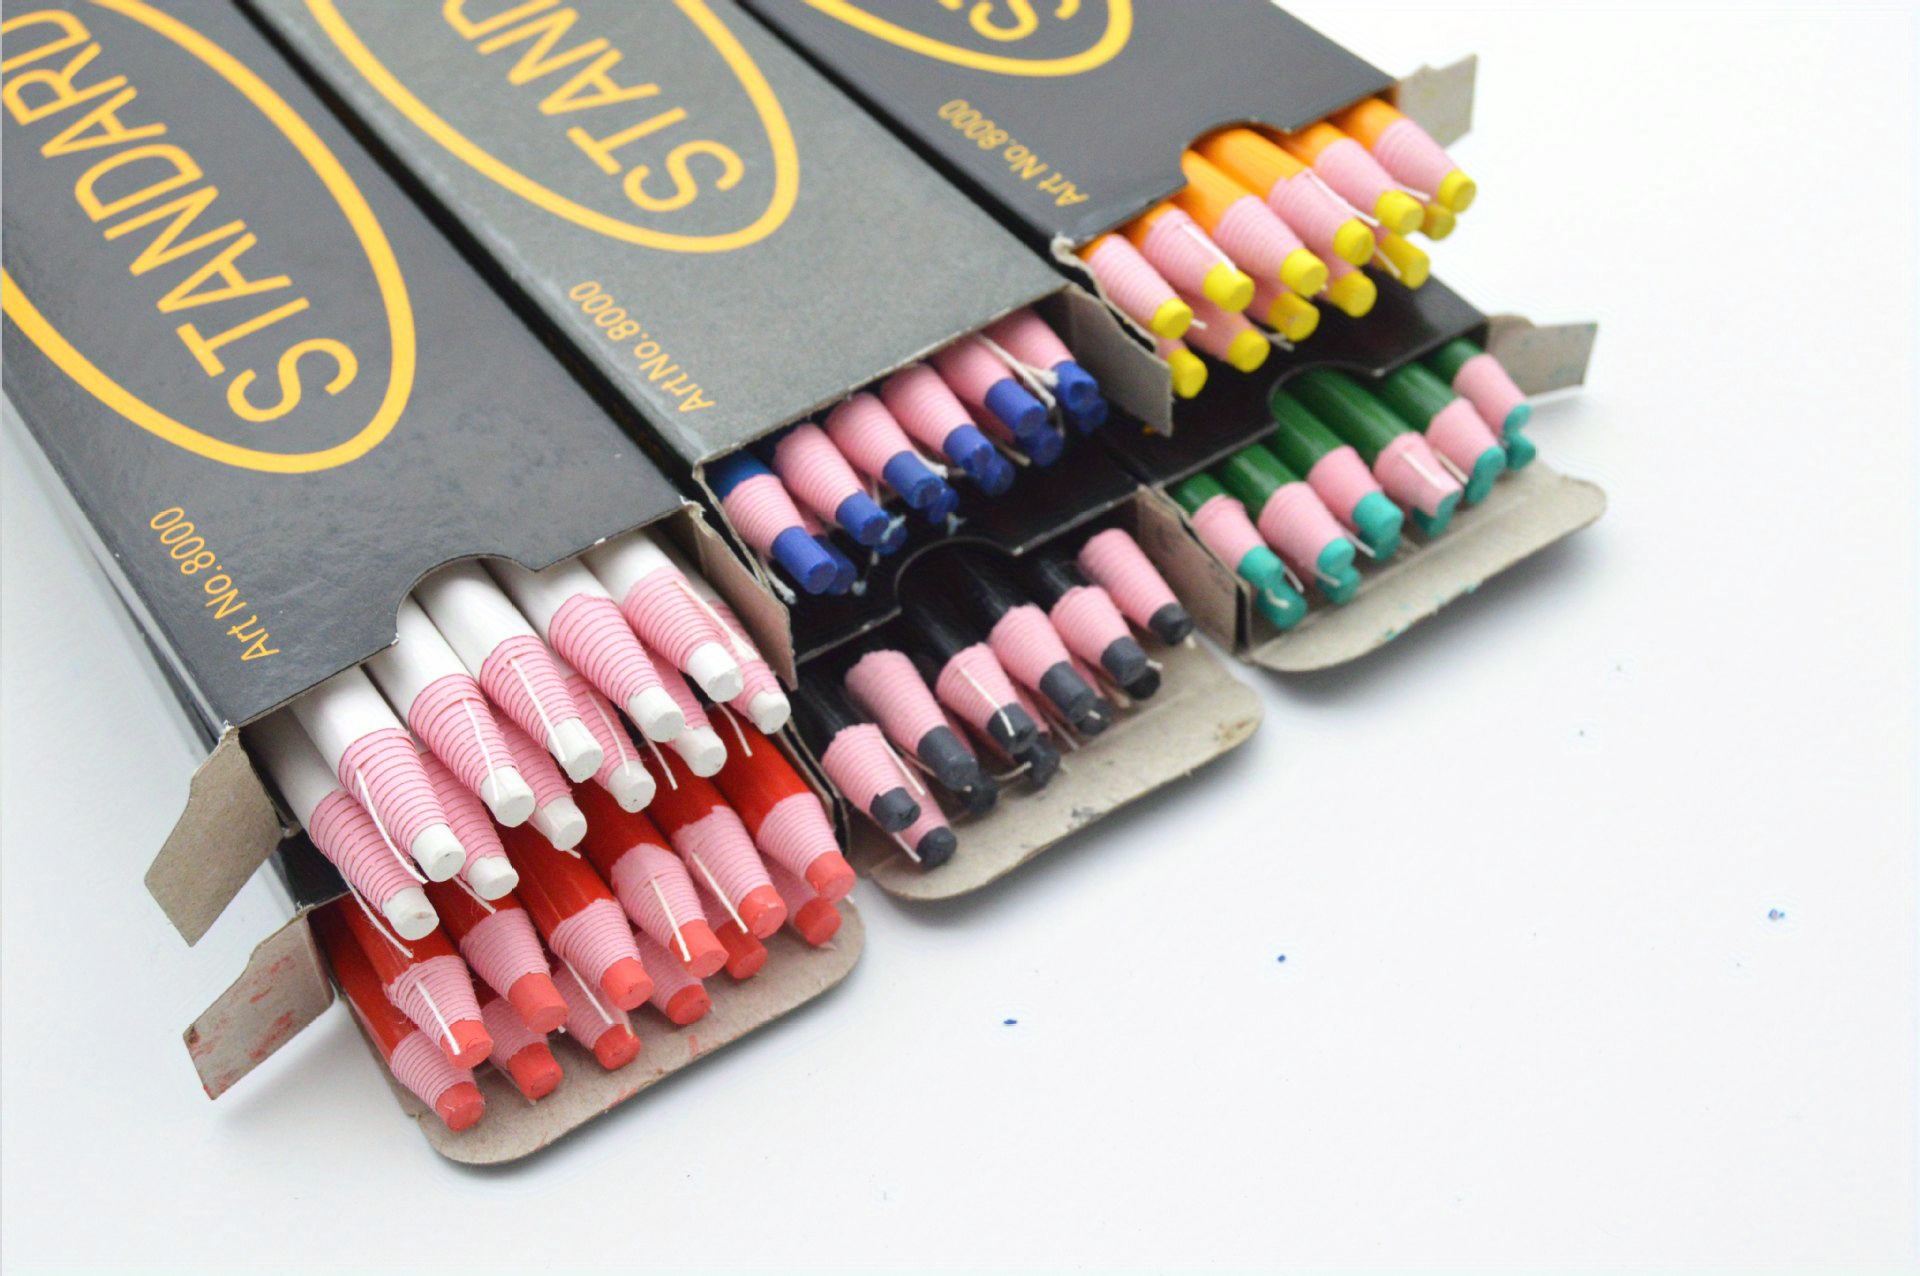  Swpeet Kit de herramientas de costura profesional de 32 piezas,  incluye 10 tizas de sastre profesional y 12 lápices de marca de costura con  10 rotuladores de tela de tinta borrable